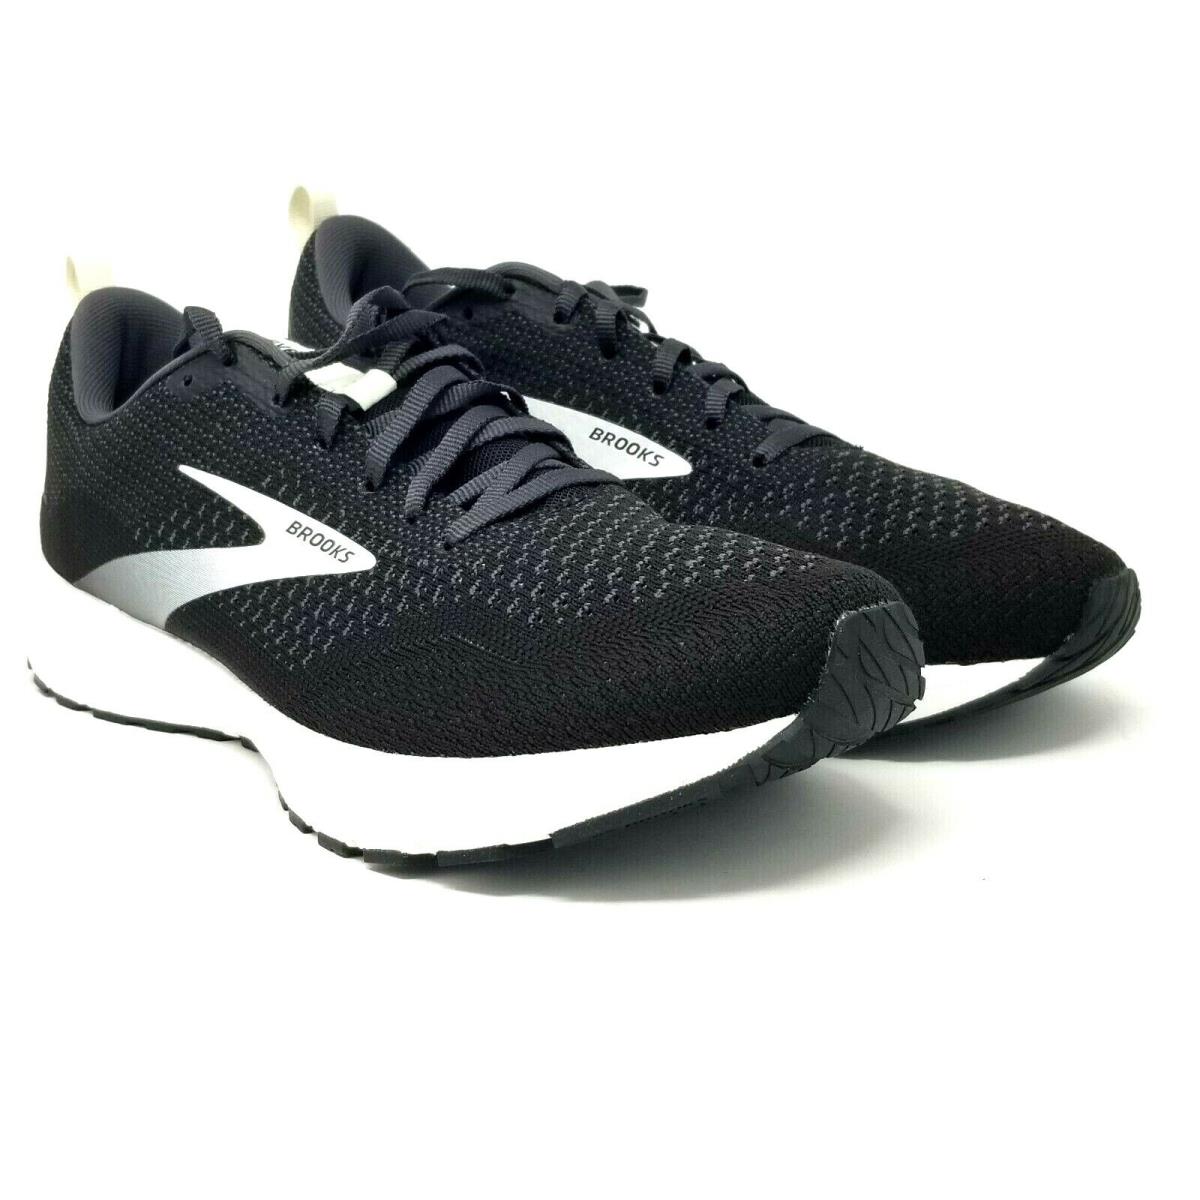 Brooks Revel 4 Hybrid Running Shoes Black Oyster Silver Men`s 10.5 EU 44.5 T316